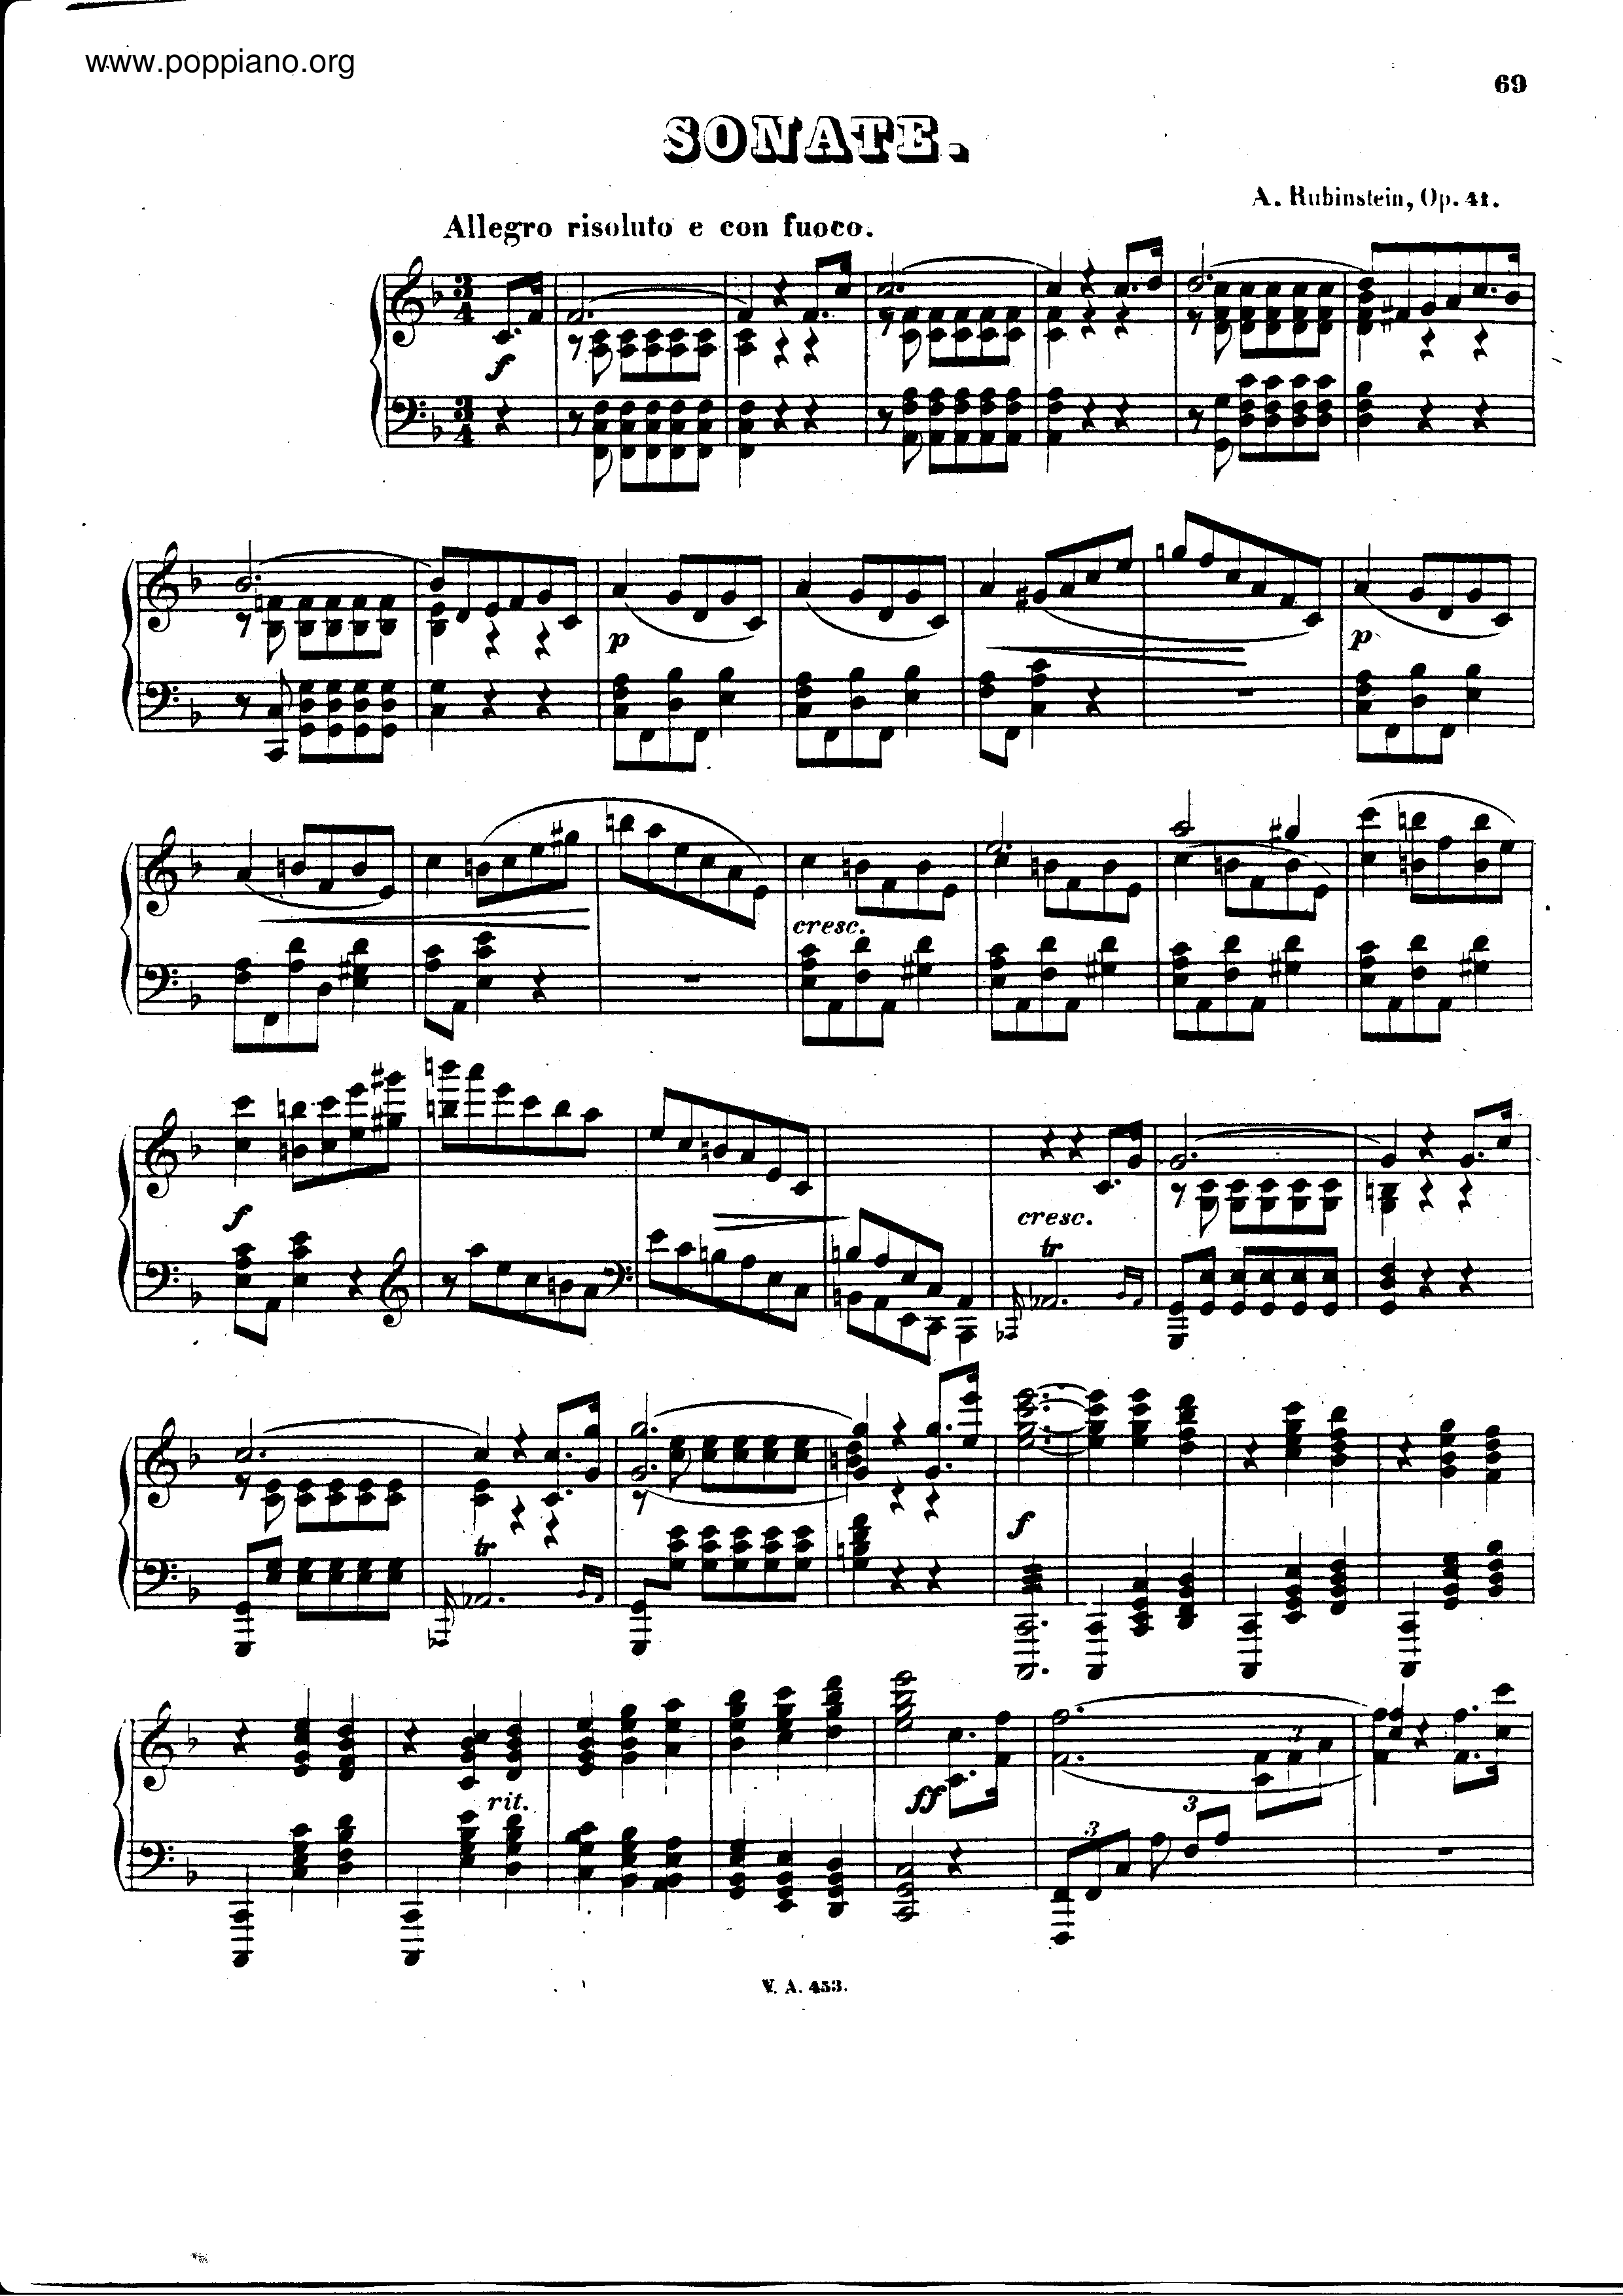 Piano sonata no.3 in F major, Op.41琴譜